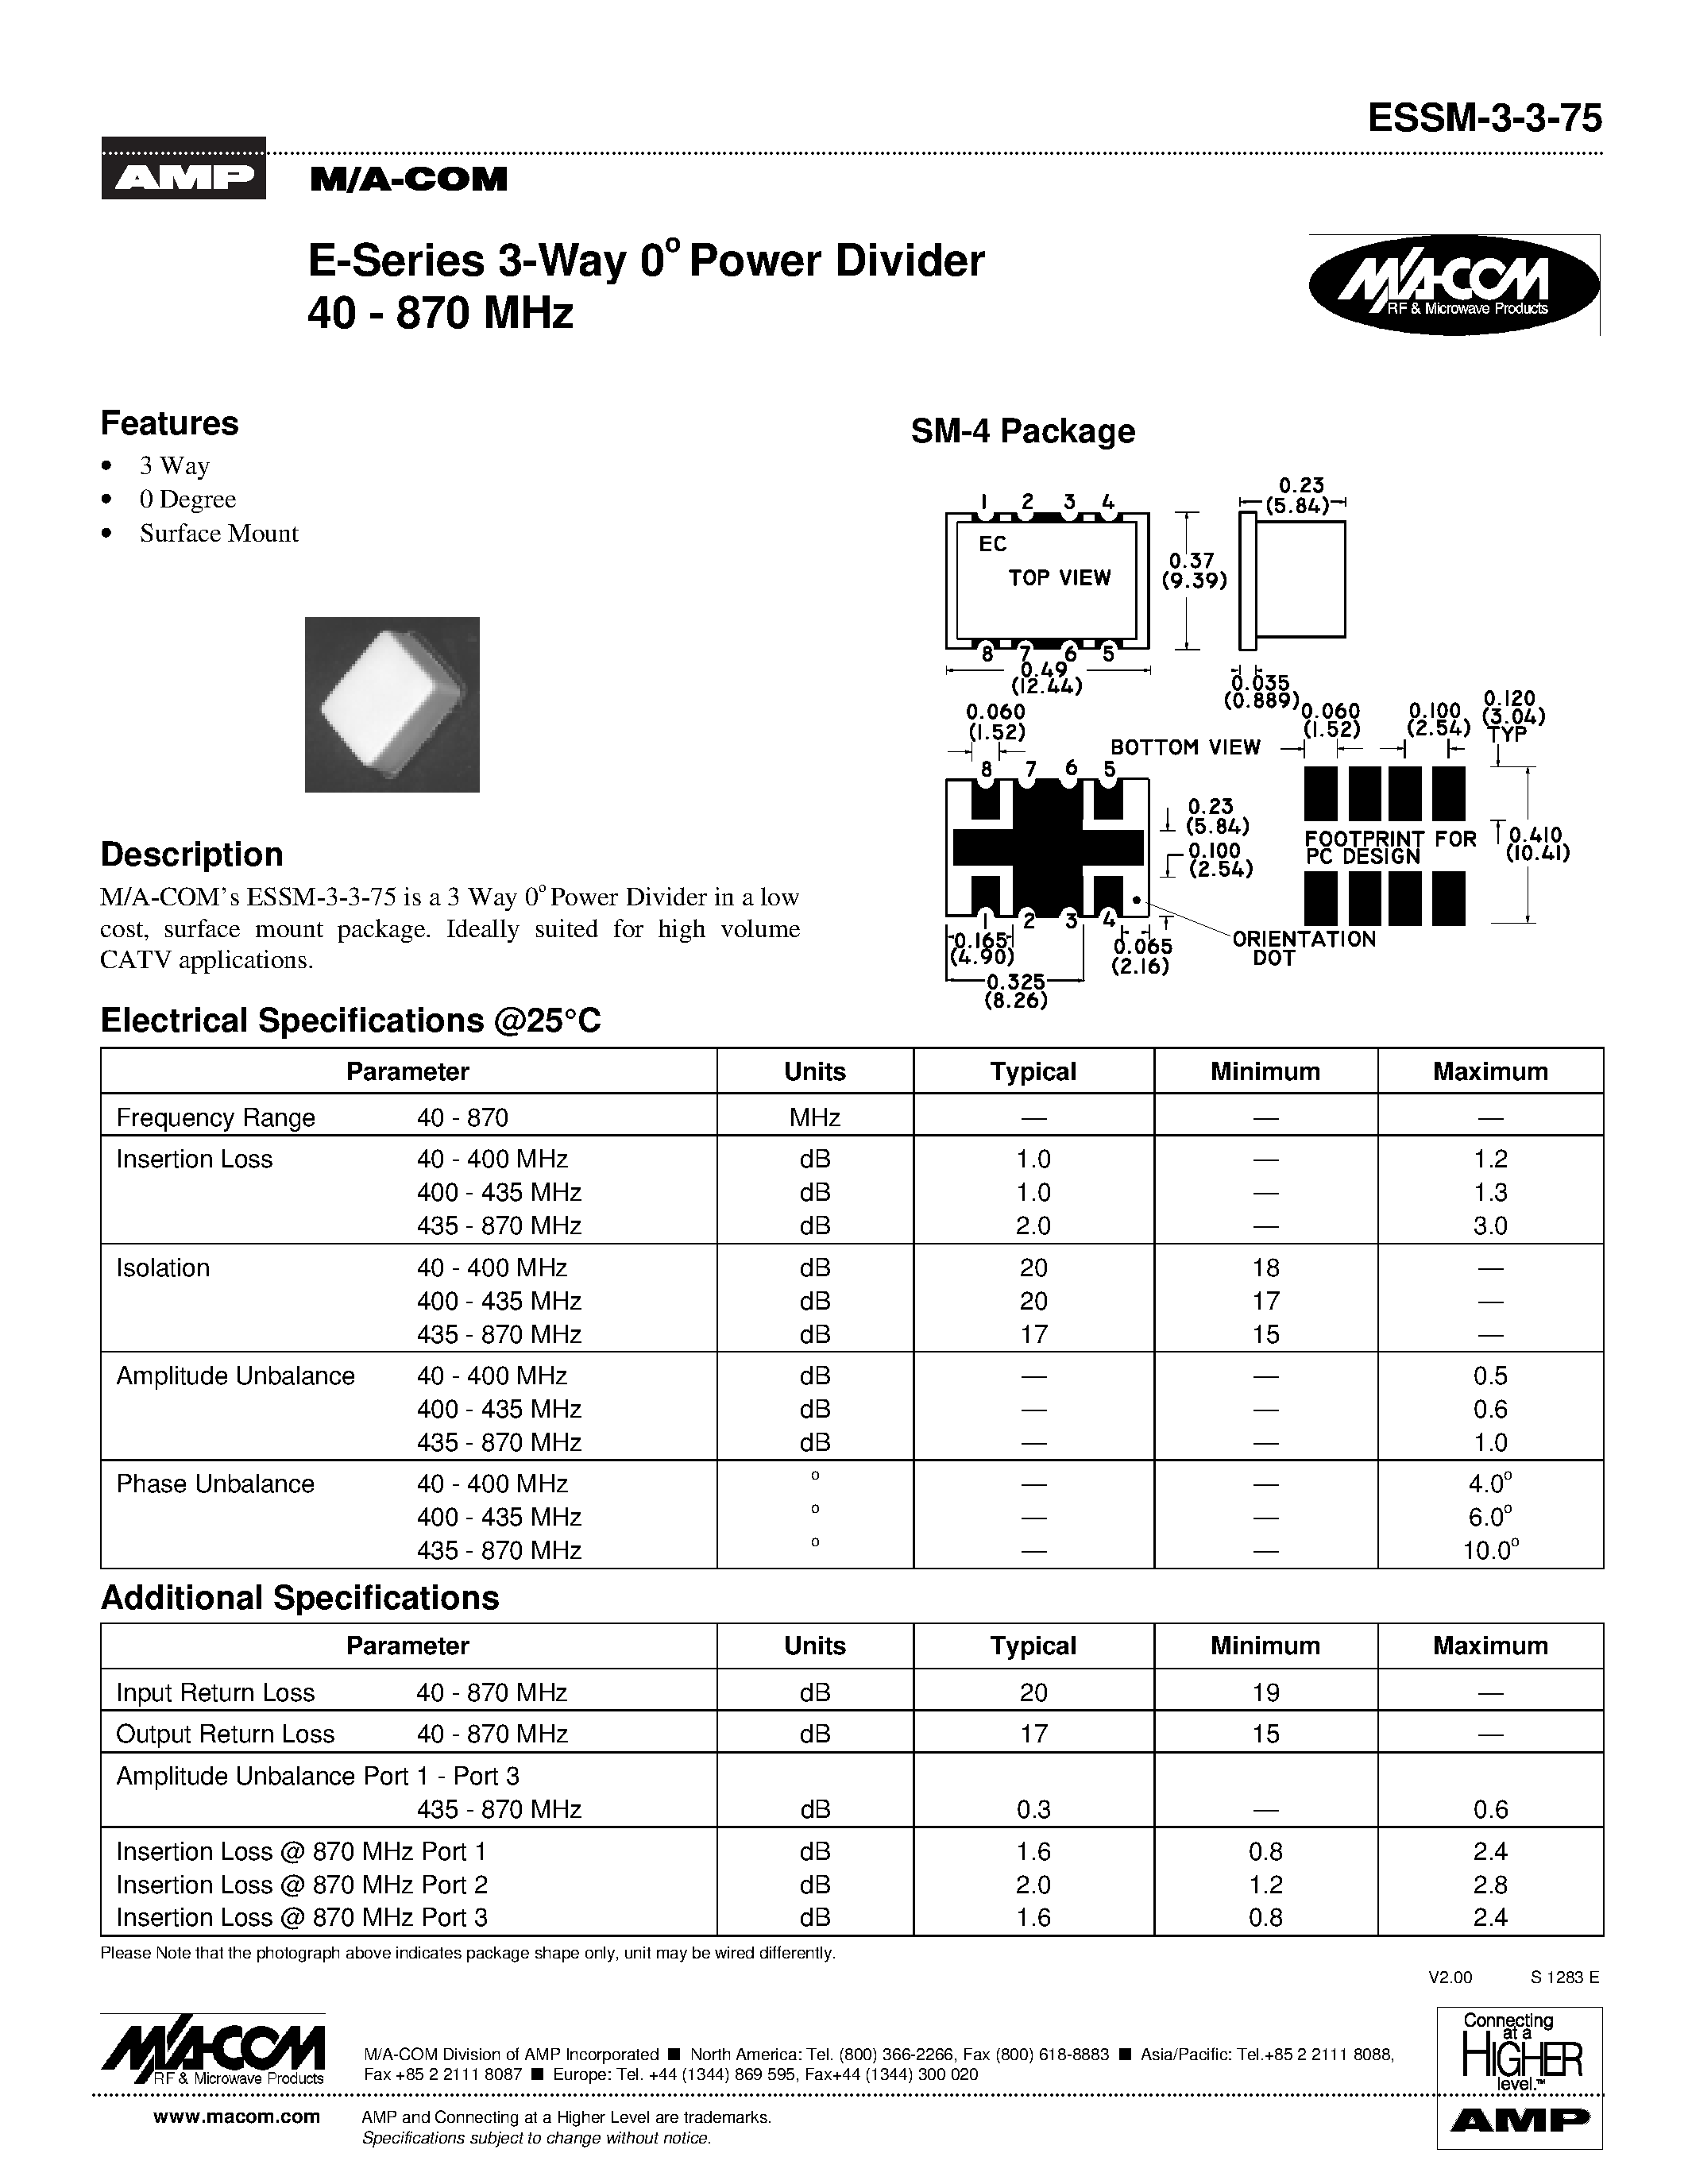 Datasheet ESSM-3-3-75 - E-Series 3-Way 0 Power Divider 40 - 870 MHz page 1